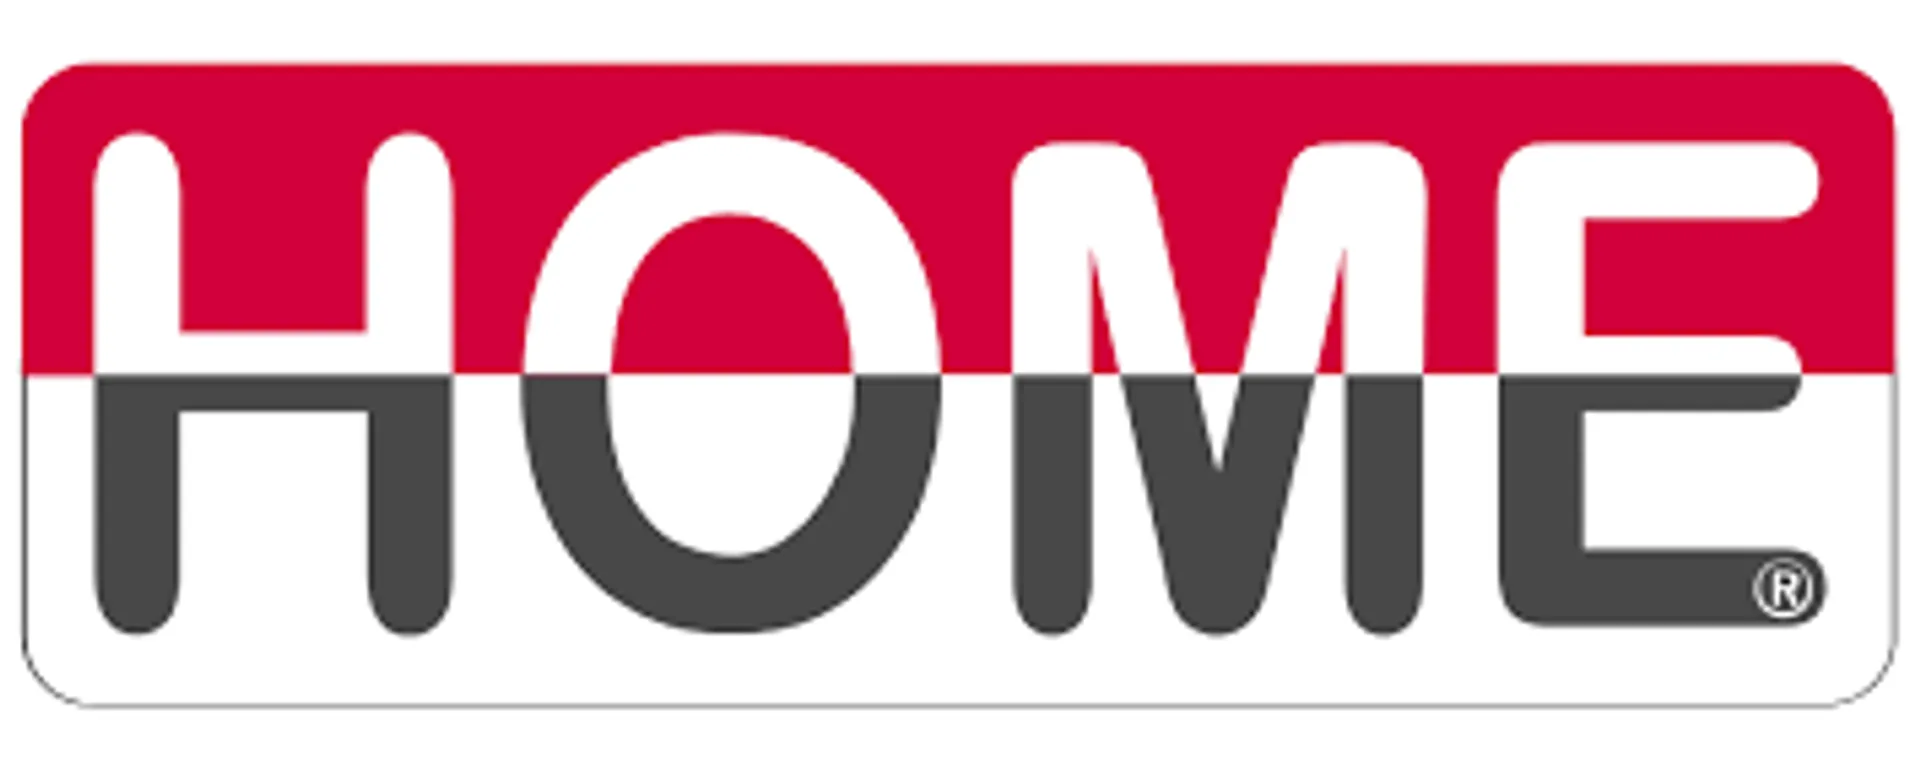 LA TIENDA HOME logo